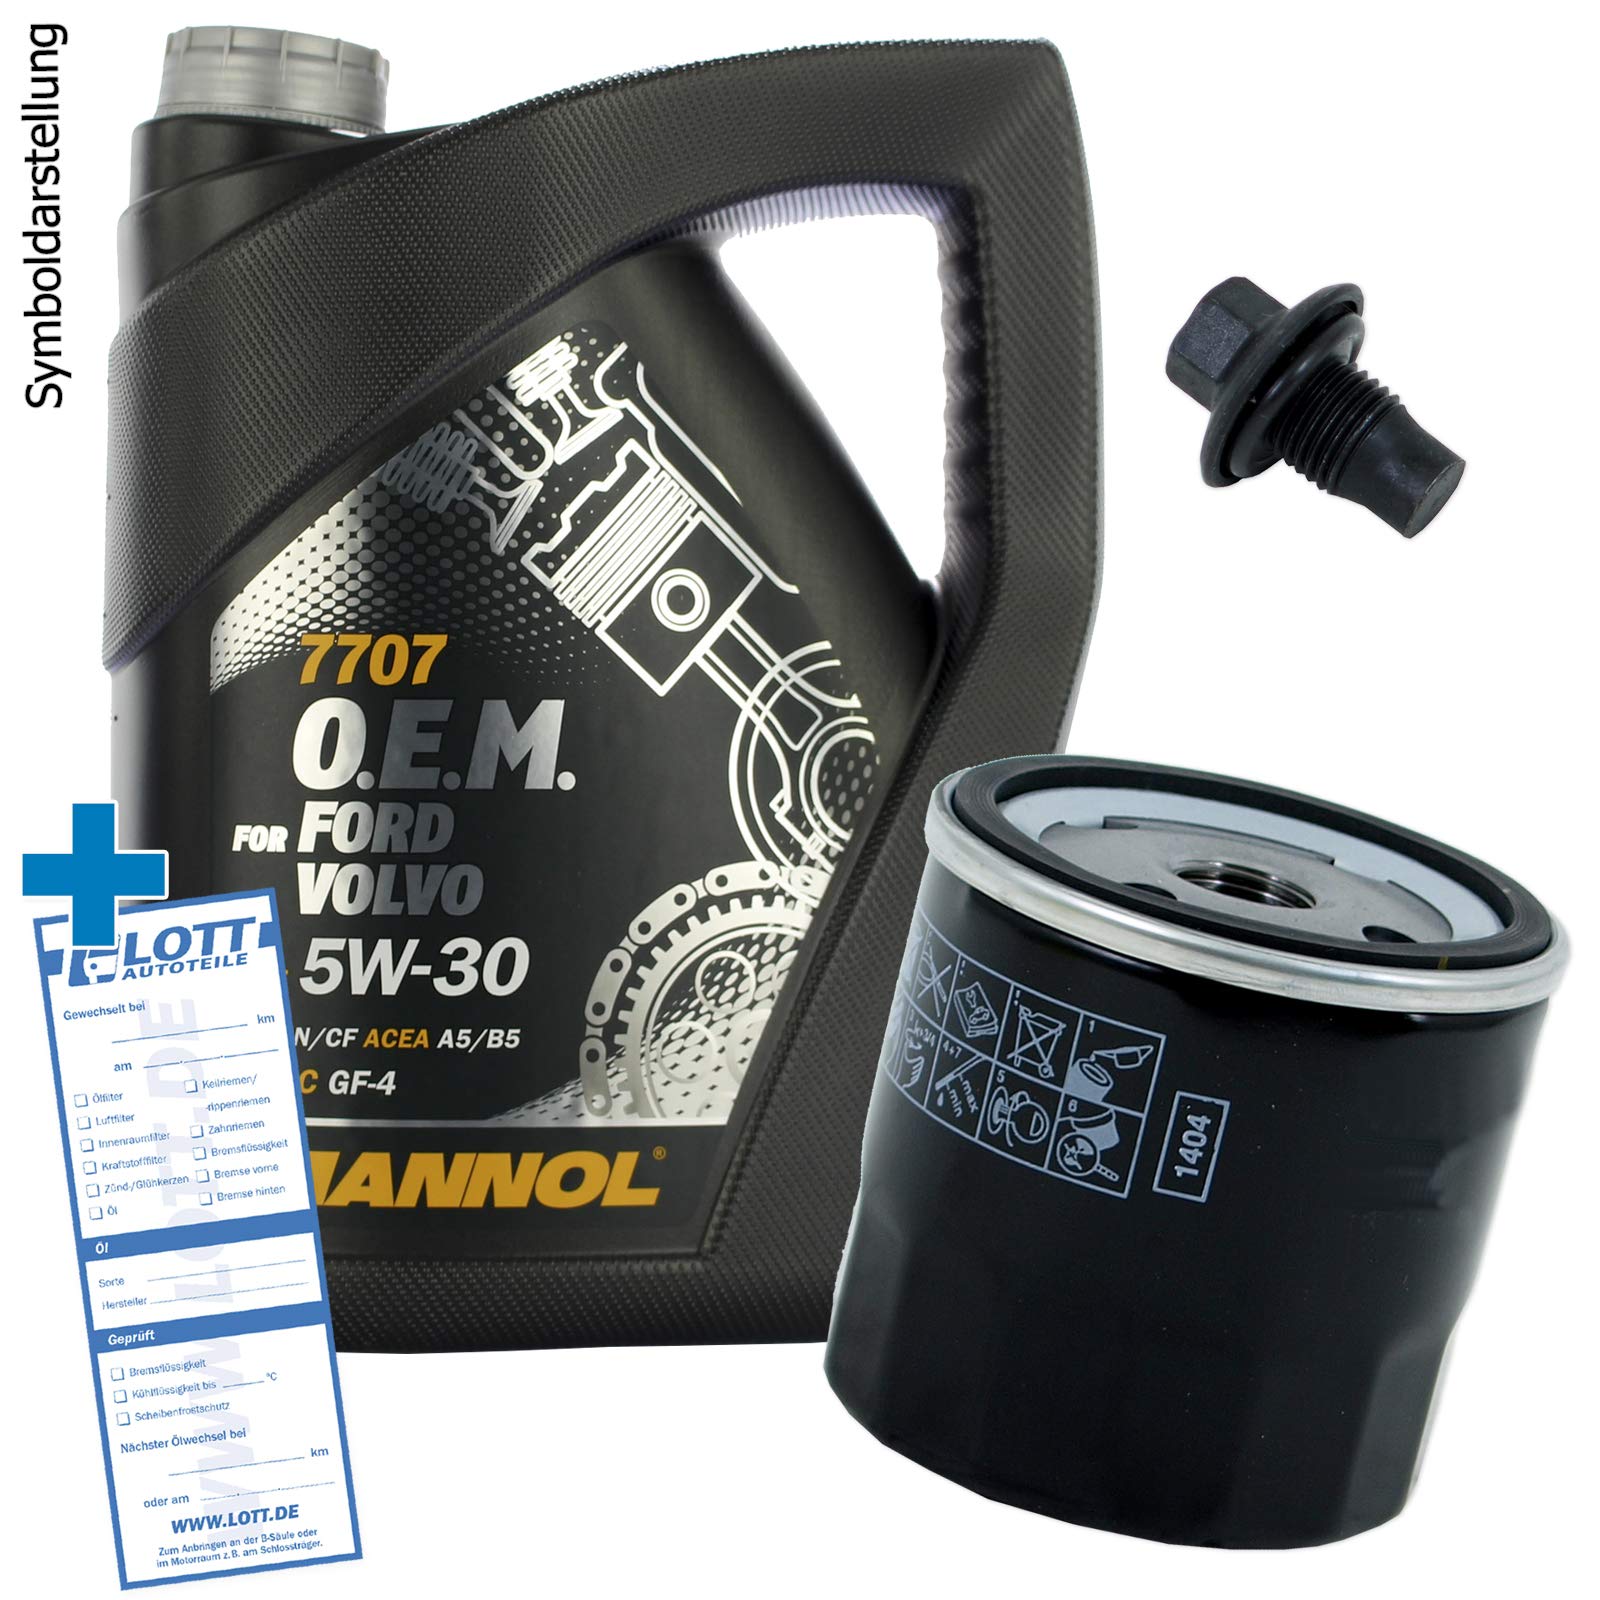 Ölwechsel Set Inspektion 5 Liter Mannol OEM 7707 5W-30 Öl + Ölfilter + Öl Ablassschraube Verschlussschraube